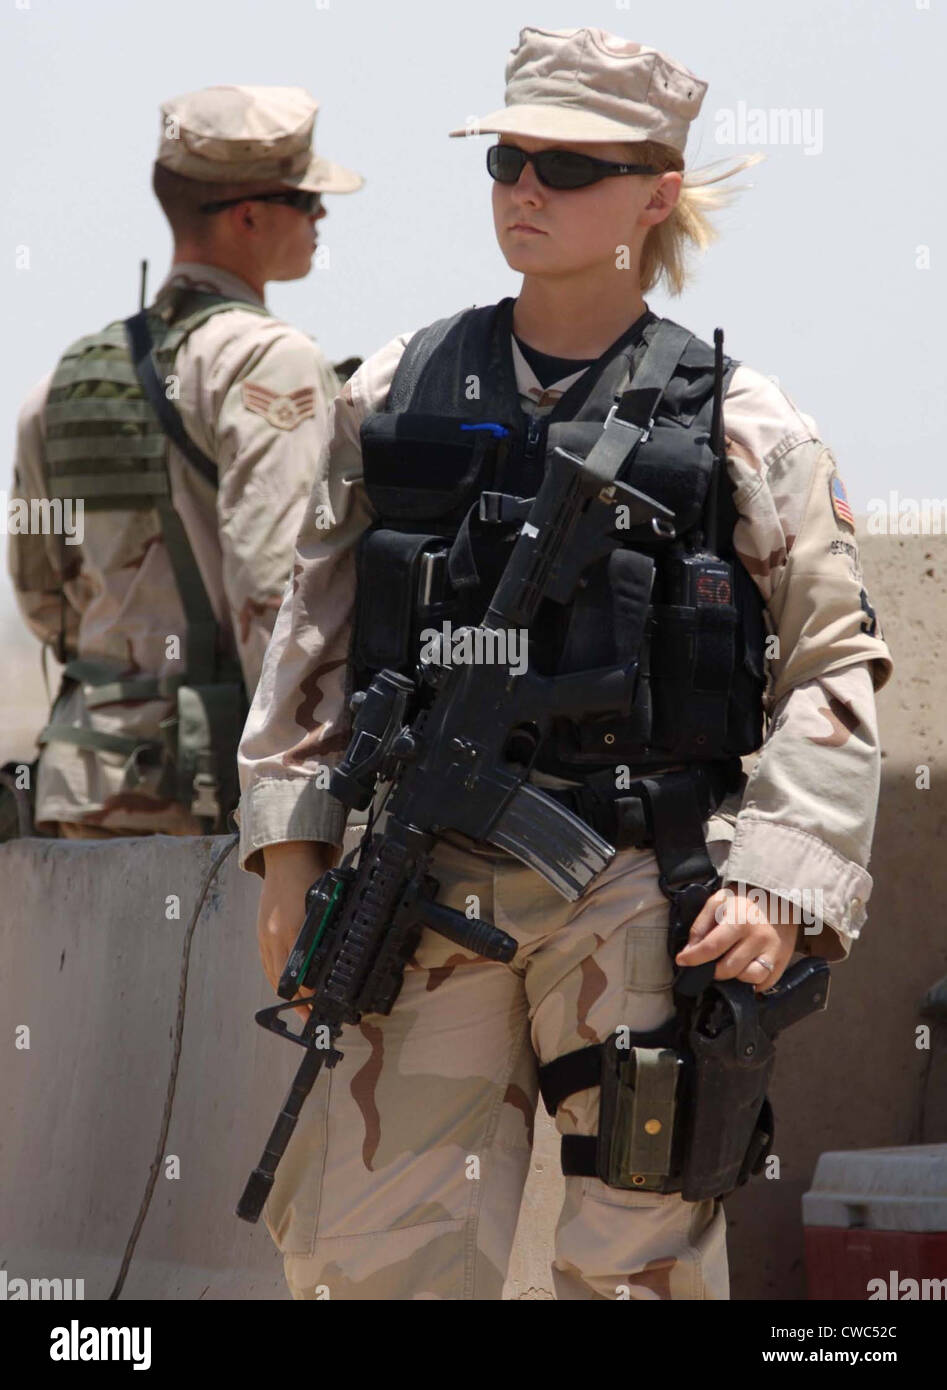 Zwei US-Flieger Stand Uhr auf Sather Air Base im Irak. Einer ist weiblich in Kampfausrüstung. Ca. 2008. (BSLOC 2011 12 368) Stockfoto